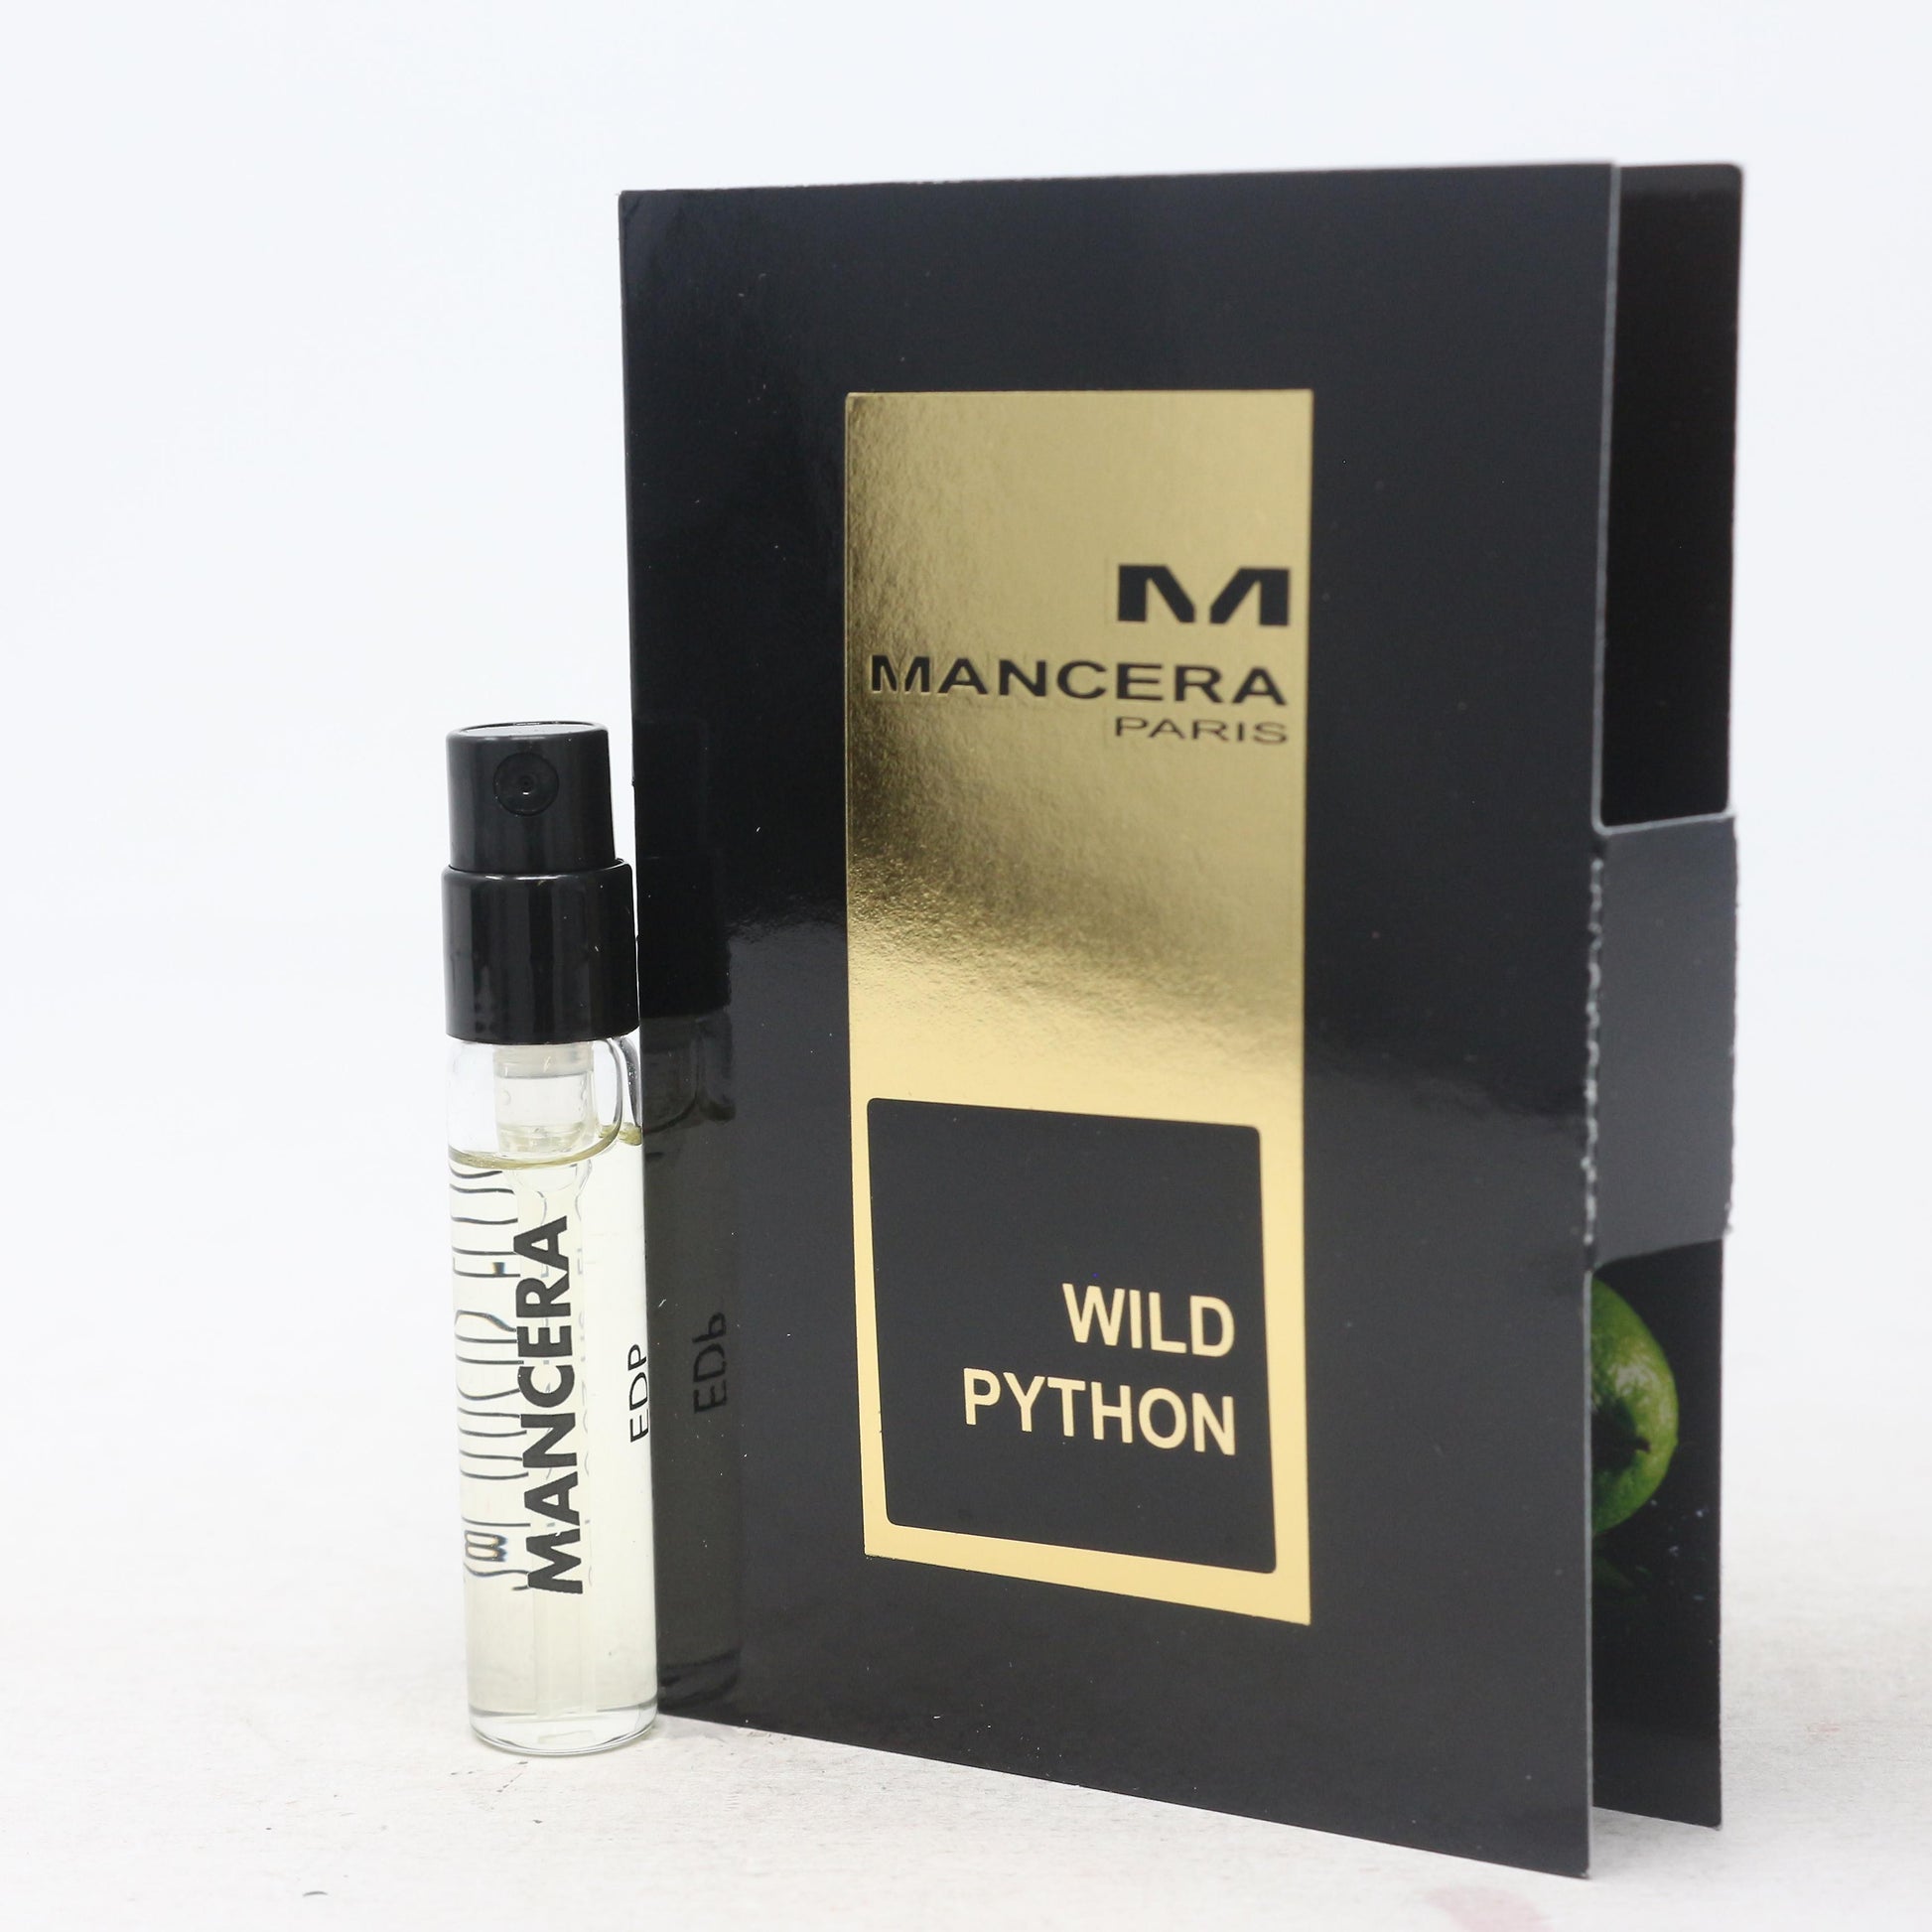 Mancera Wild Python virallinen näyte 2ml 0.07 fl.oz.